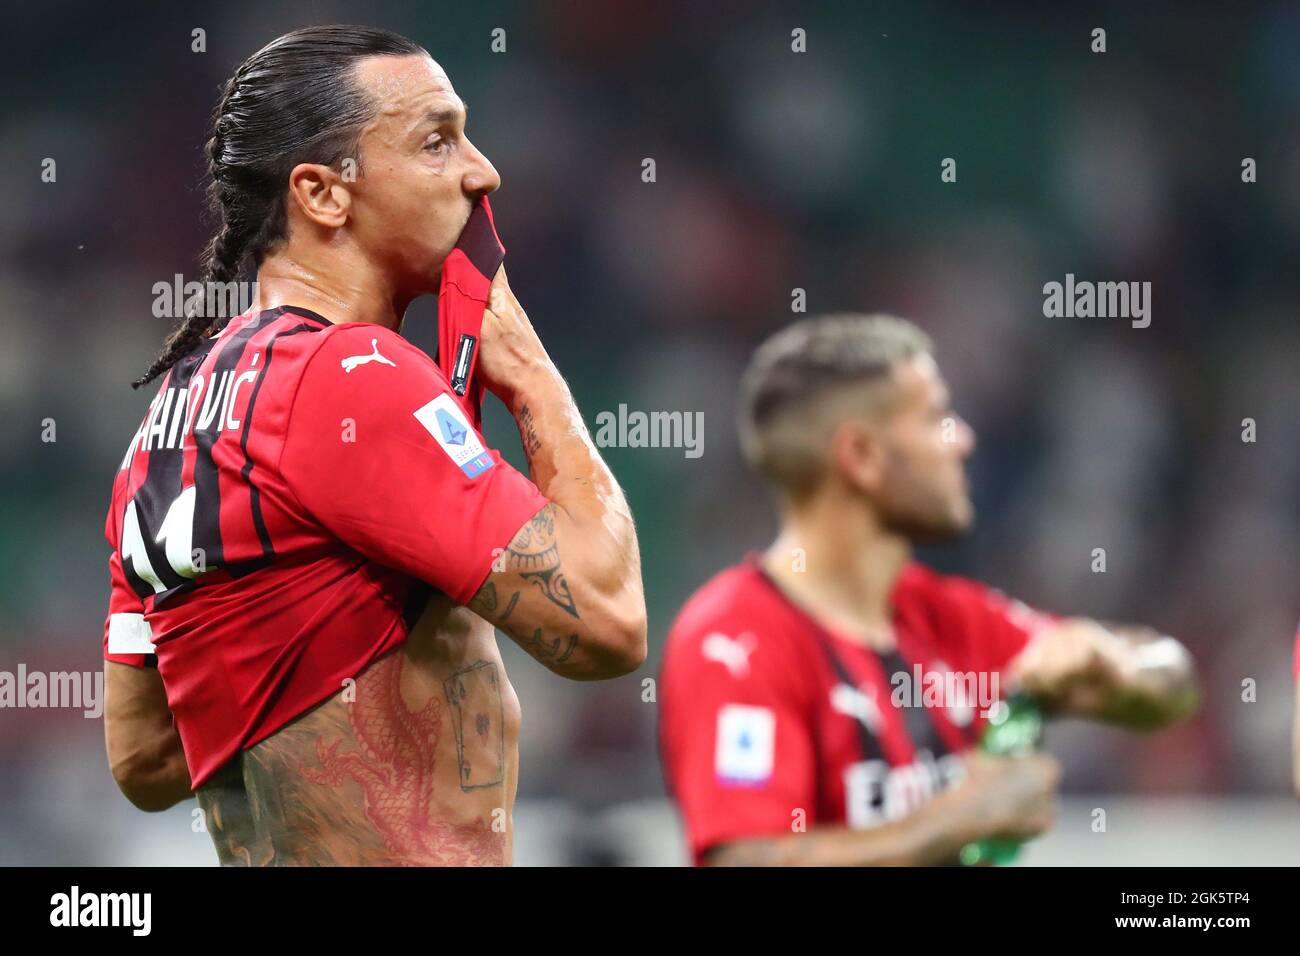 Mailand, Italien. 12. September 2021. Zlatan Ibrahimovic vom AC Mailand sieht während des Serie-A-Spiels zwischen dem AC Mailand und der SS Lazio aus. Stockfoto